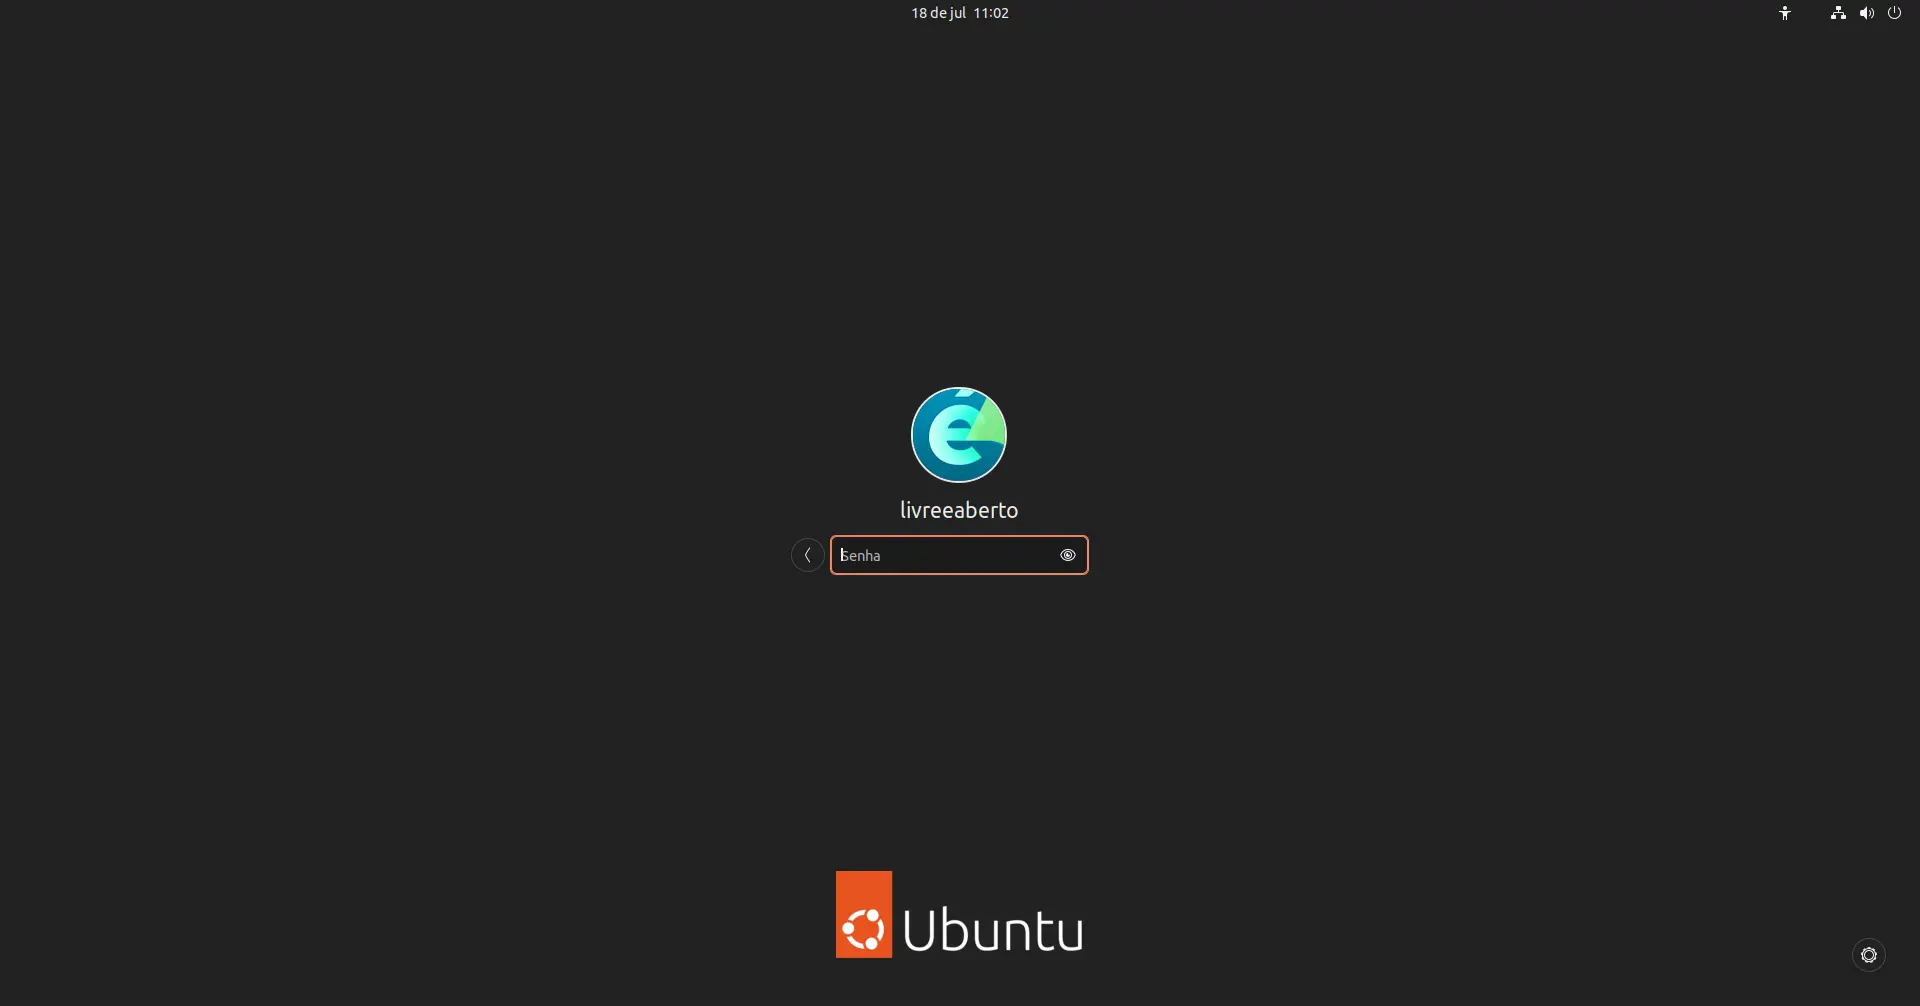 Tela de login padrão do Ubuntu